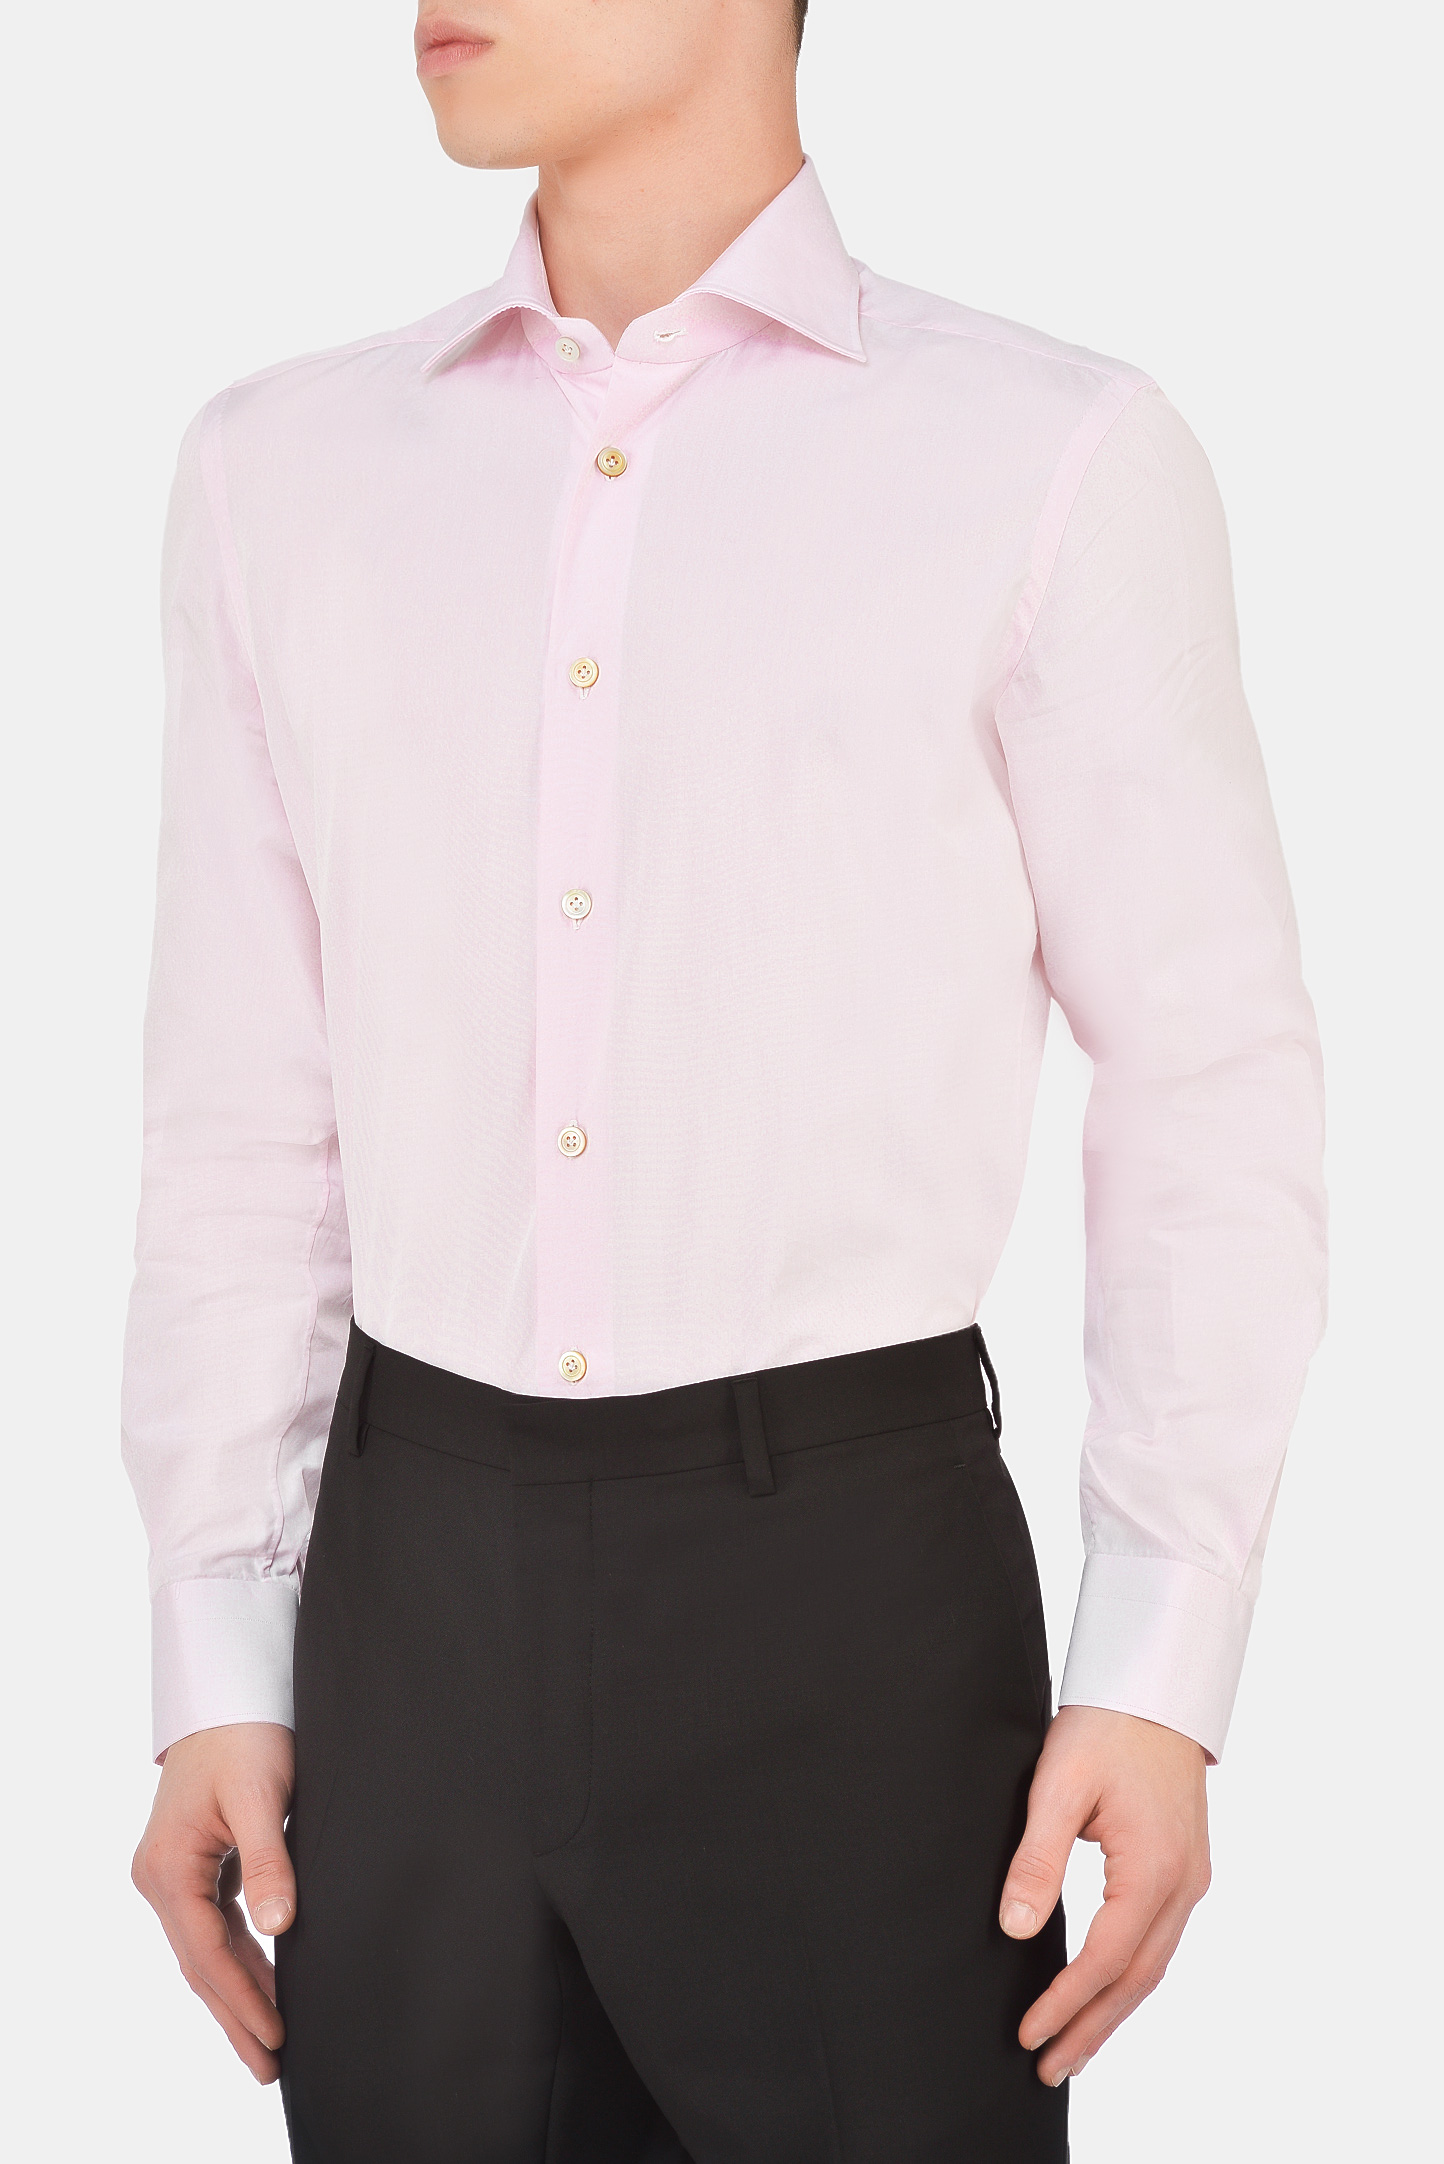 Рубашка KITON UCCH077070, цвет: Розовый, Мужской